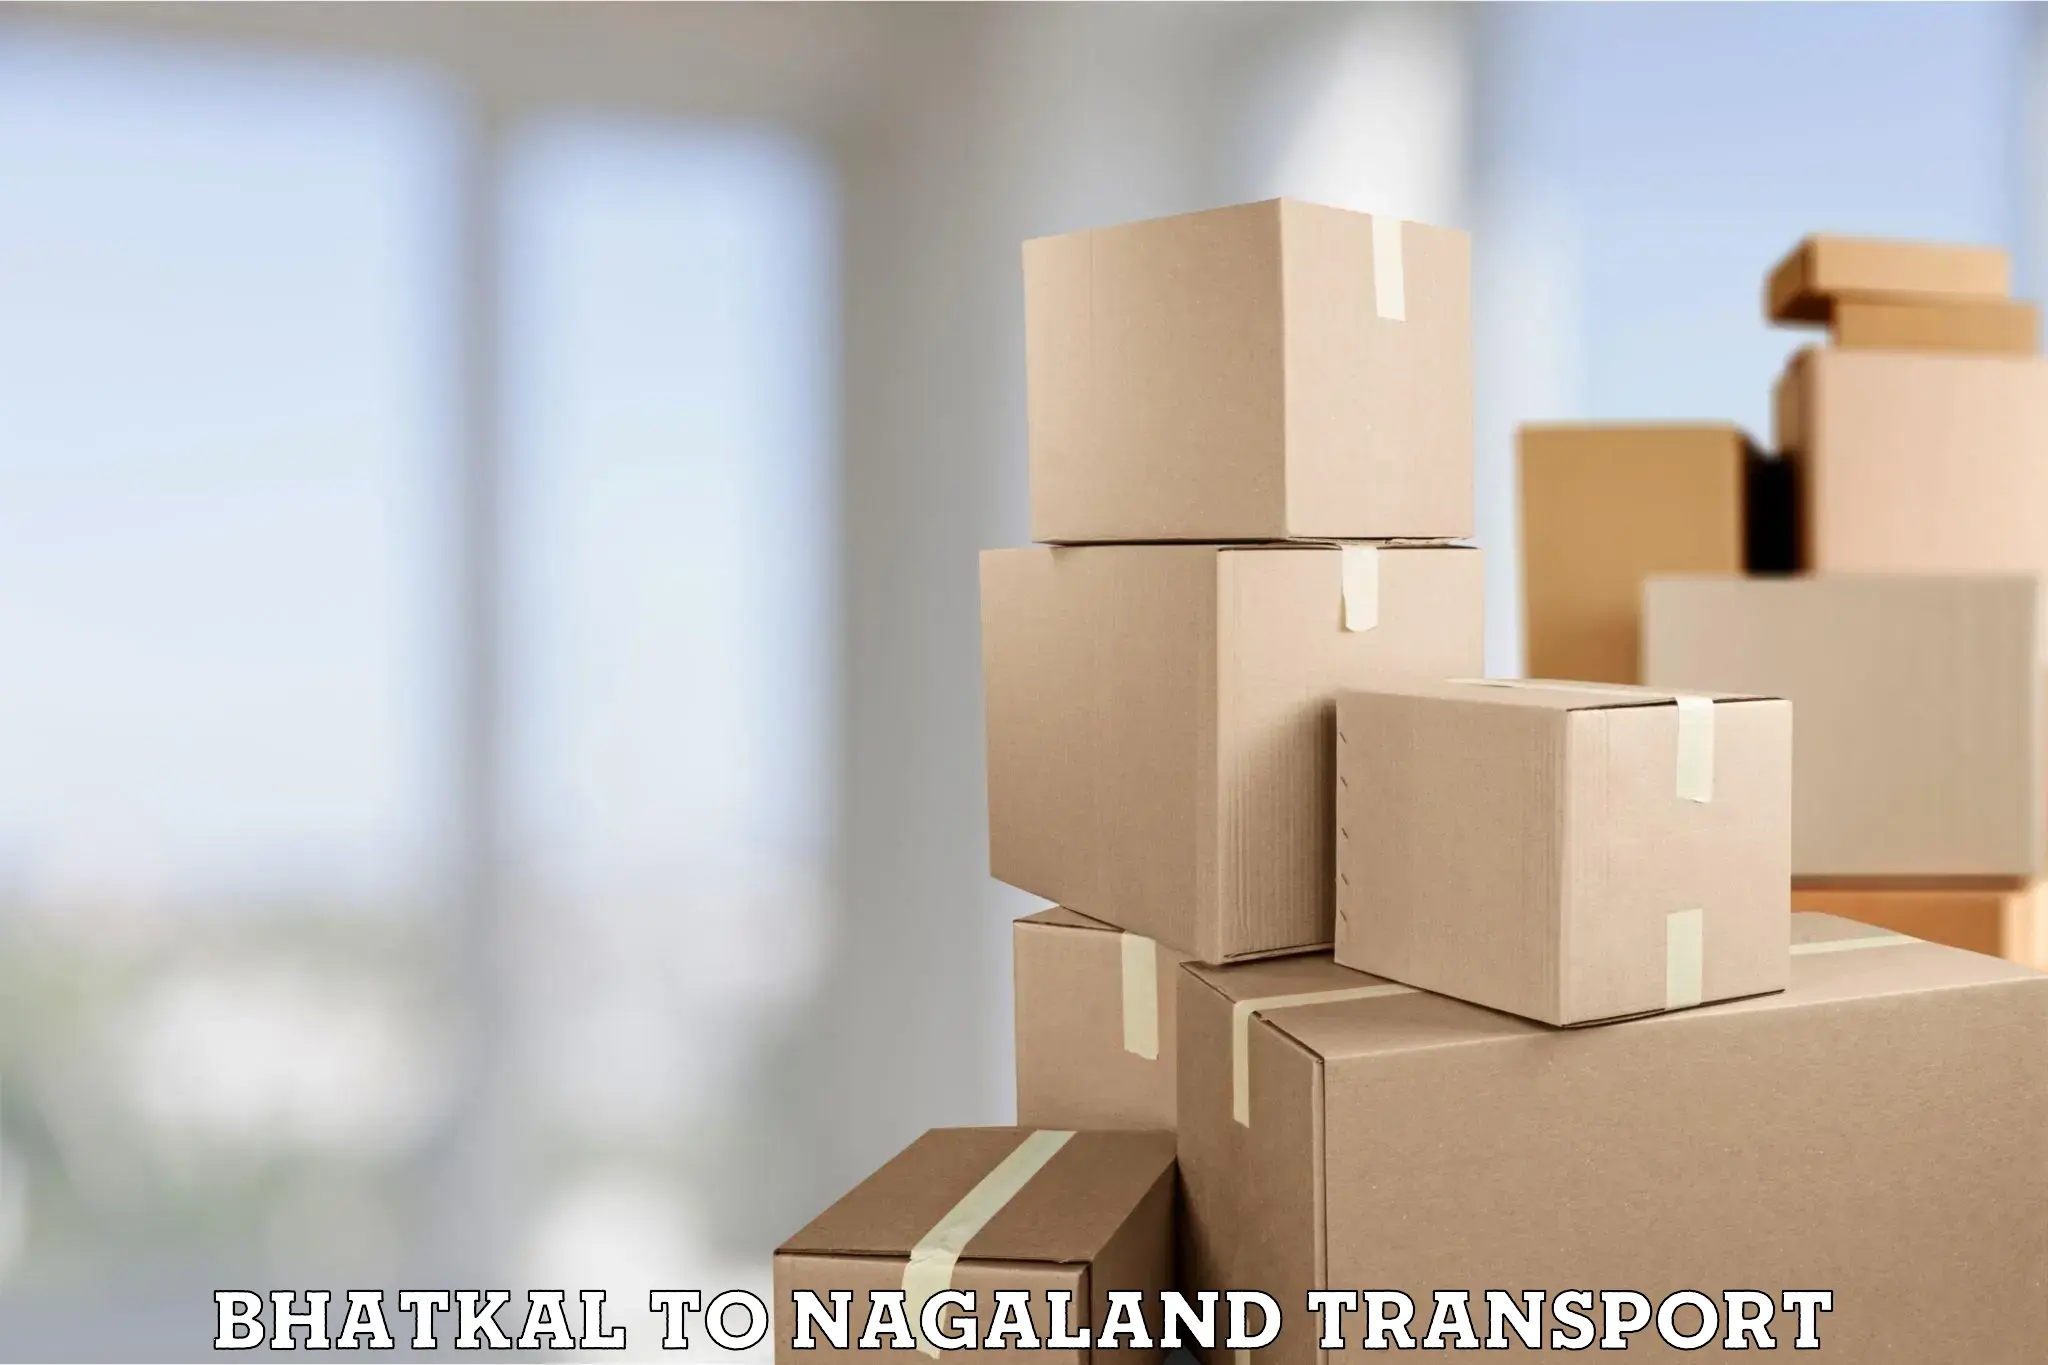 Nearest transport service Bhatkal to NIT Nagaland